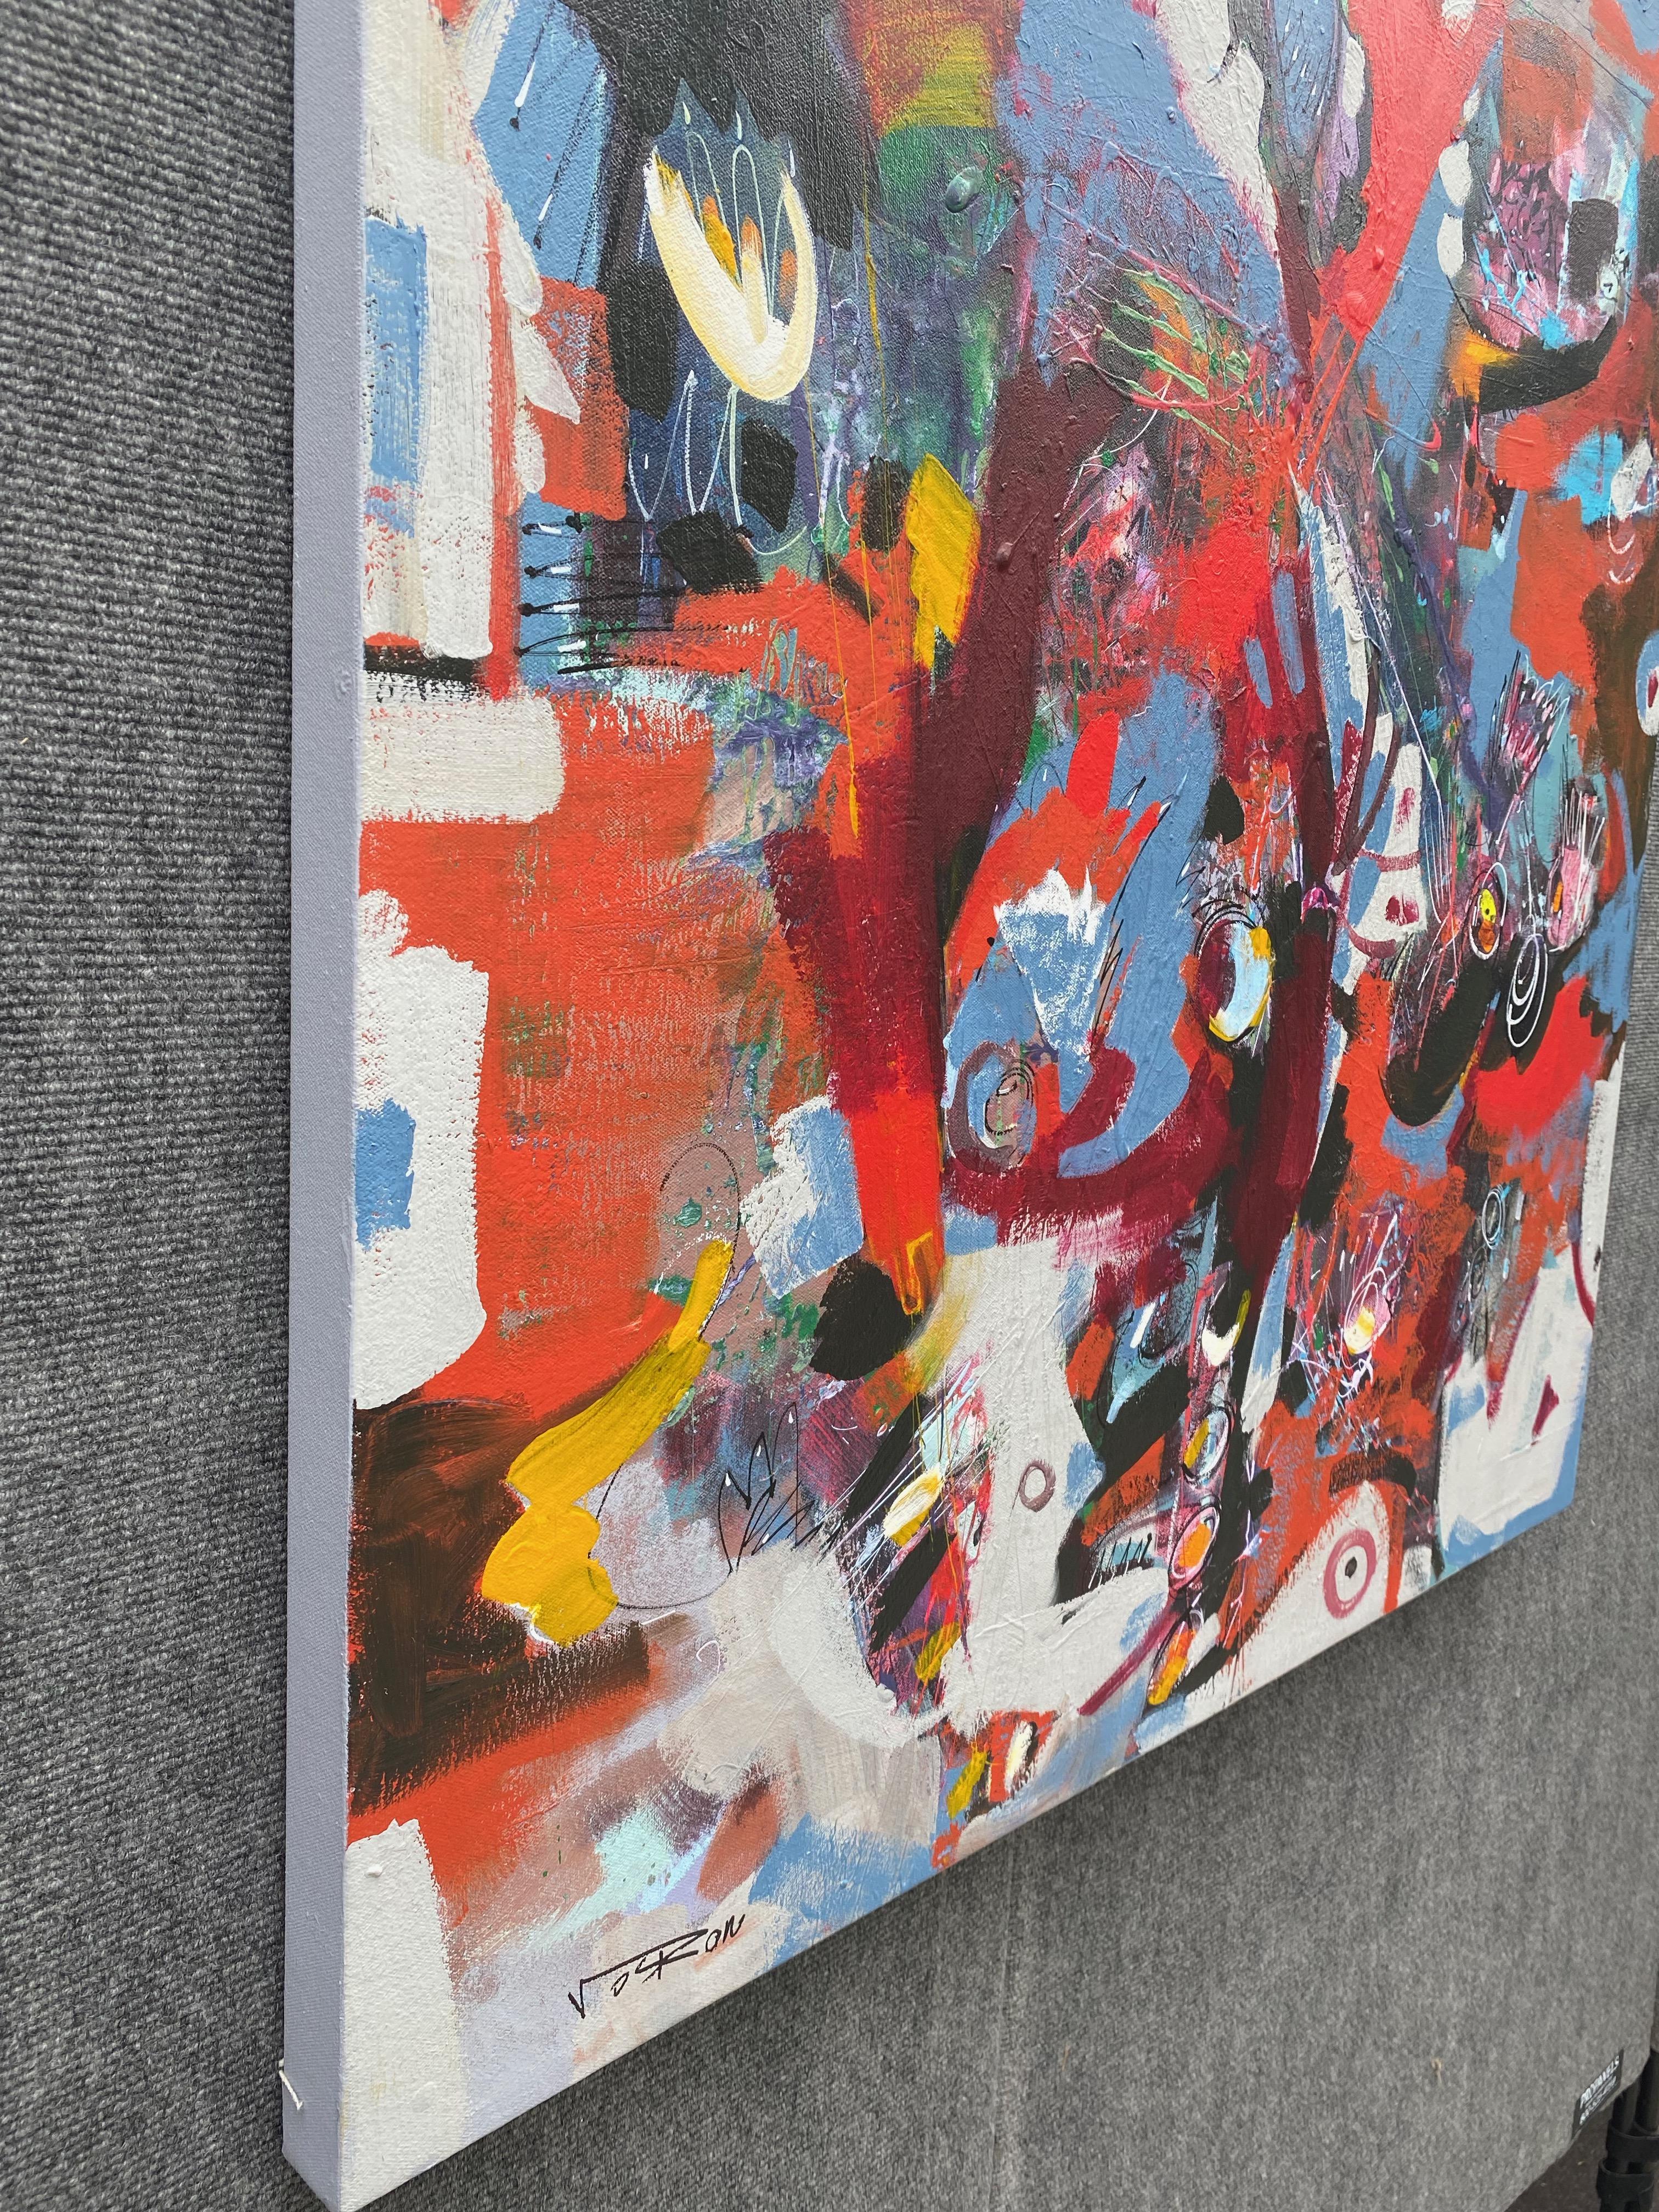 25
Artistics : Voskan Galstian 
Travail : Peinture acrylique originale, œuvre d'art faite à la main, unique en son genre 
Médium : Acrylique sur toile 
Année : 2022
Style : Art abstrait, 
Sujet : S'habiller en rouge,
Taille : 36